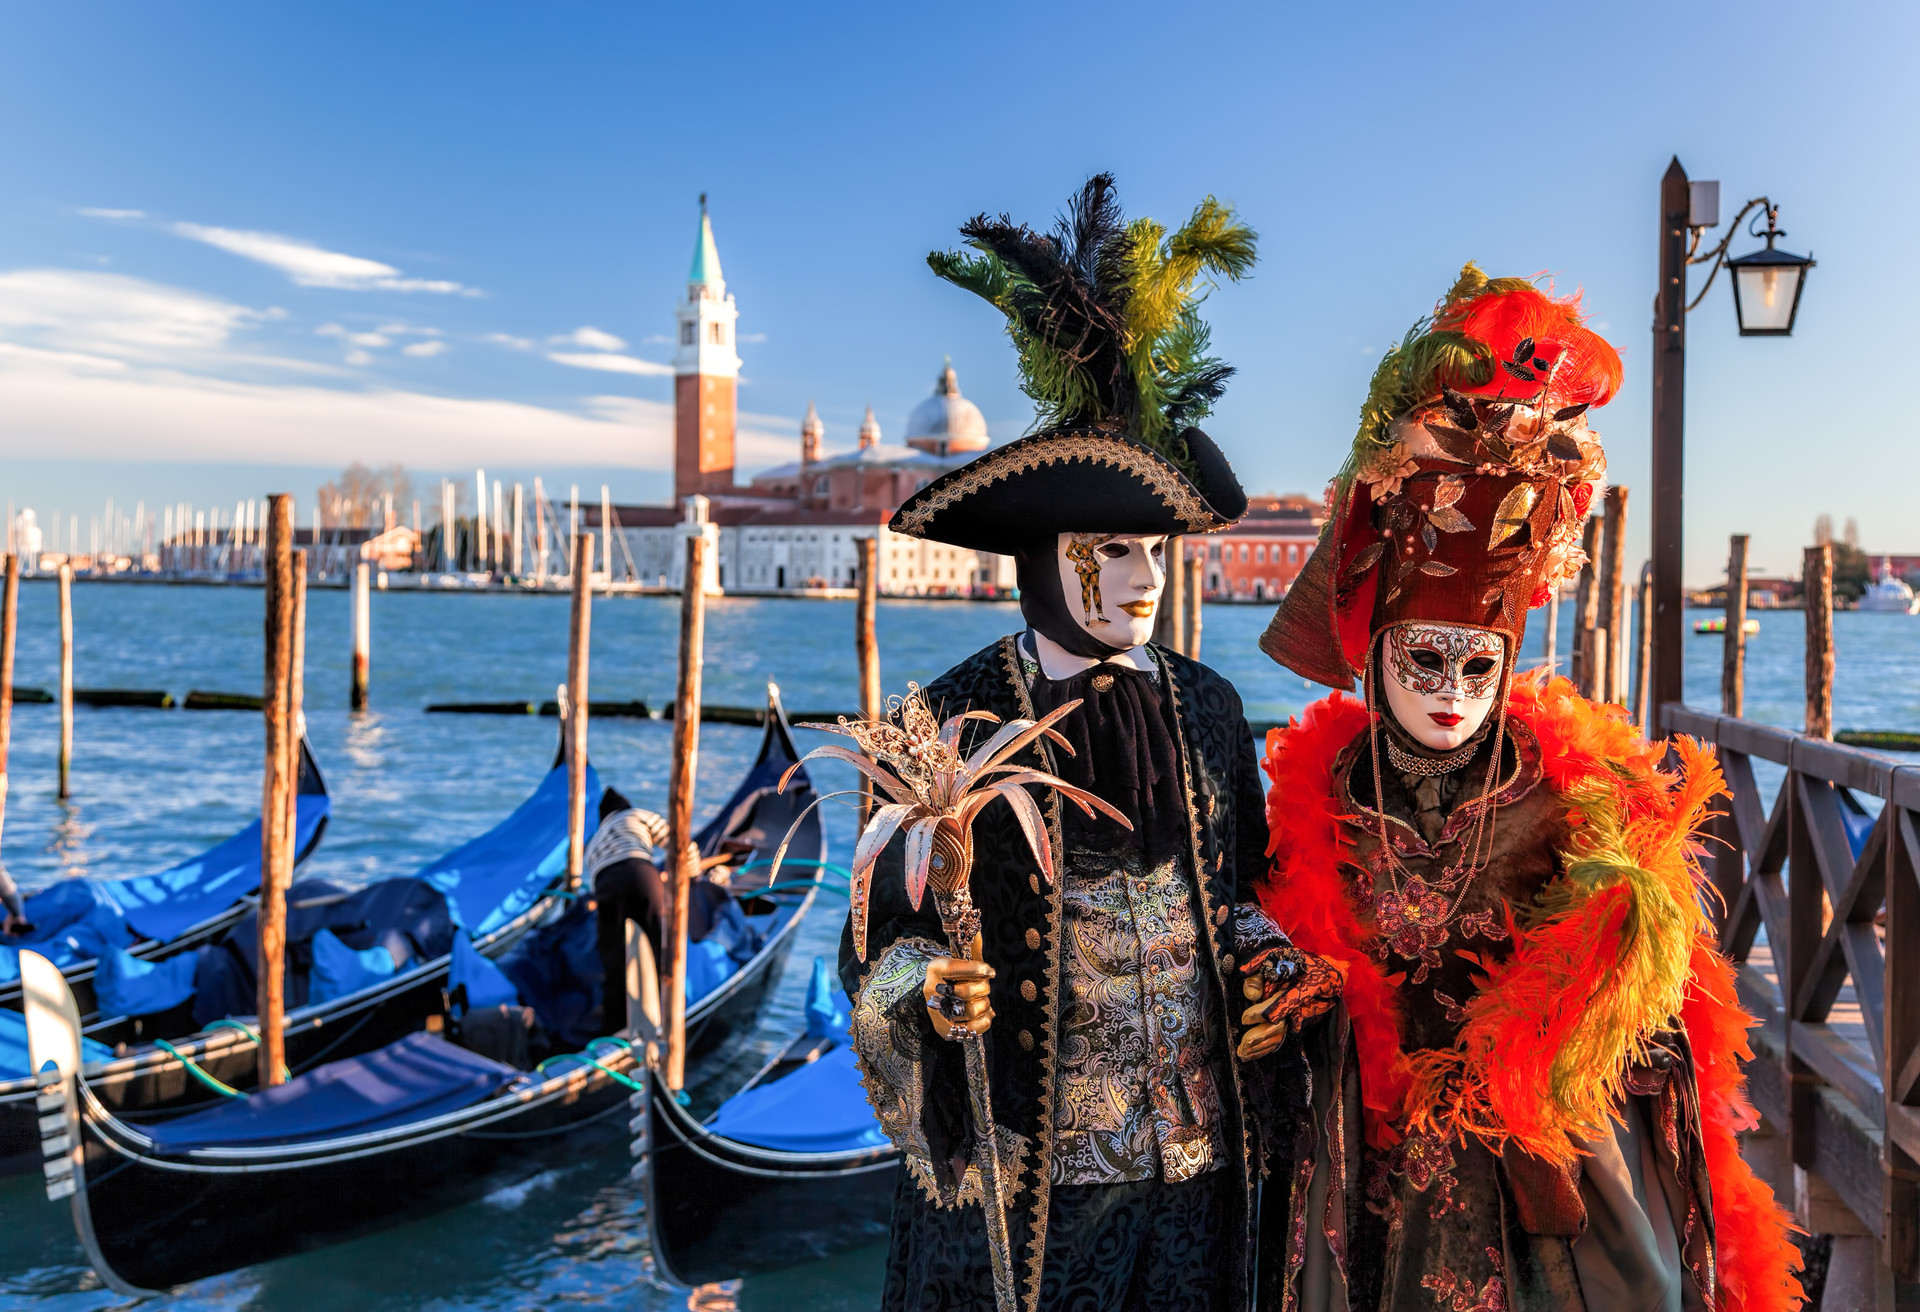 En Venecia no hay solo puentes y canales… ¡Ponte tu máscara de carnaval y disfruta de la fiesta!